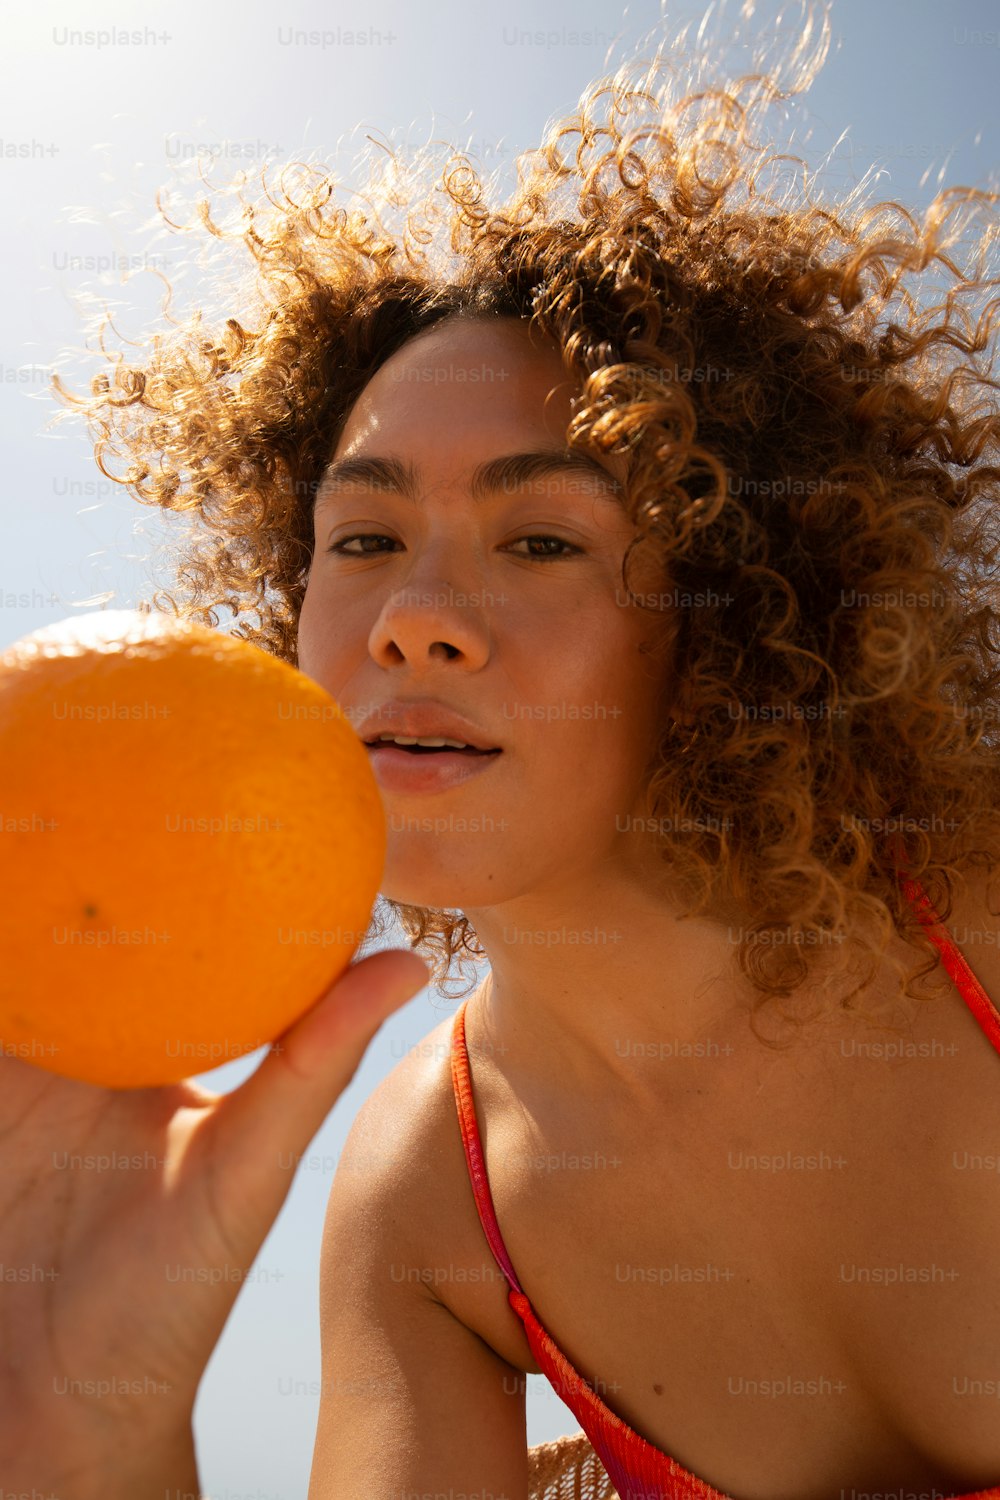 Una mujer en bikini sosteniendo una naranja